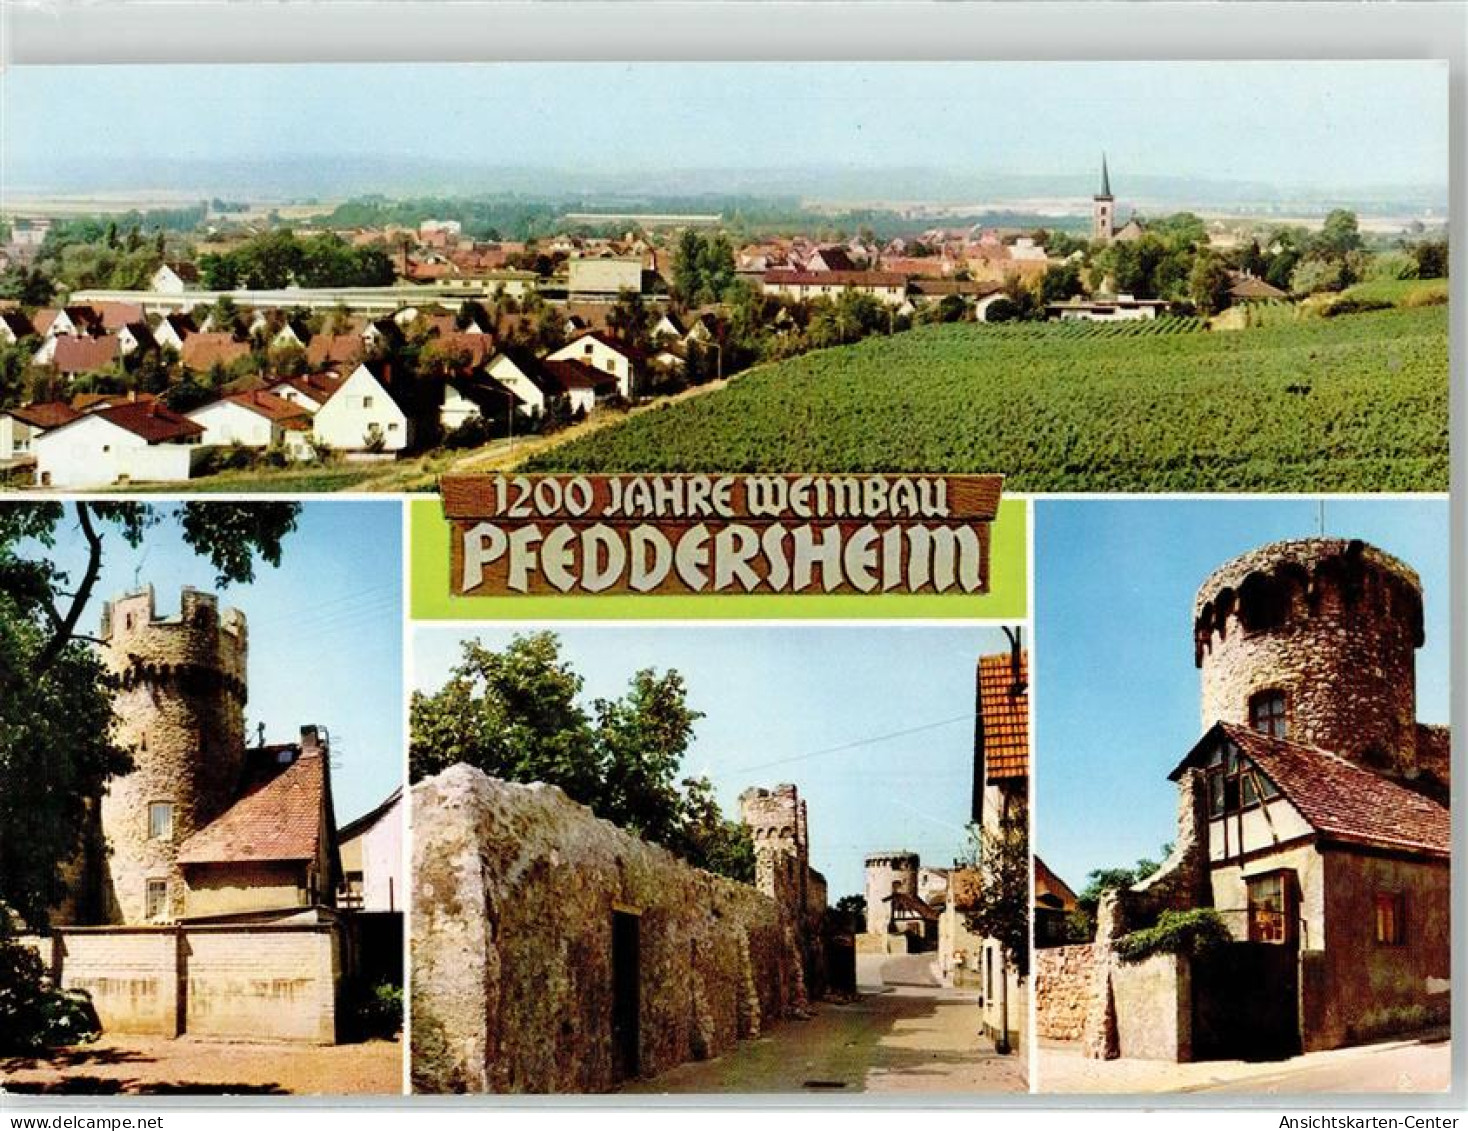 52138307 - Pfeddersheim - Worms